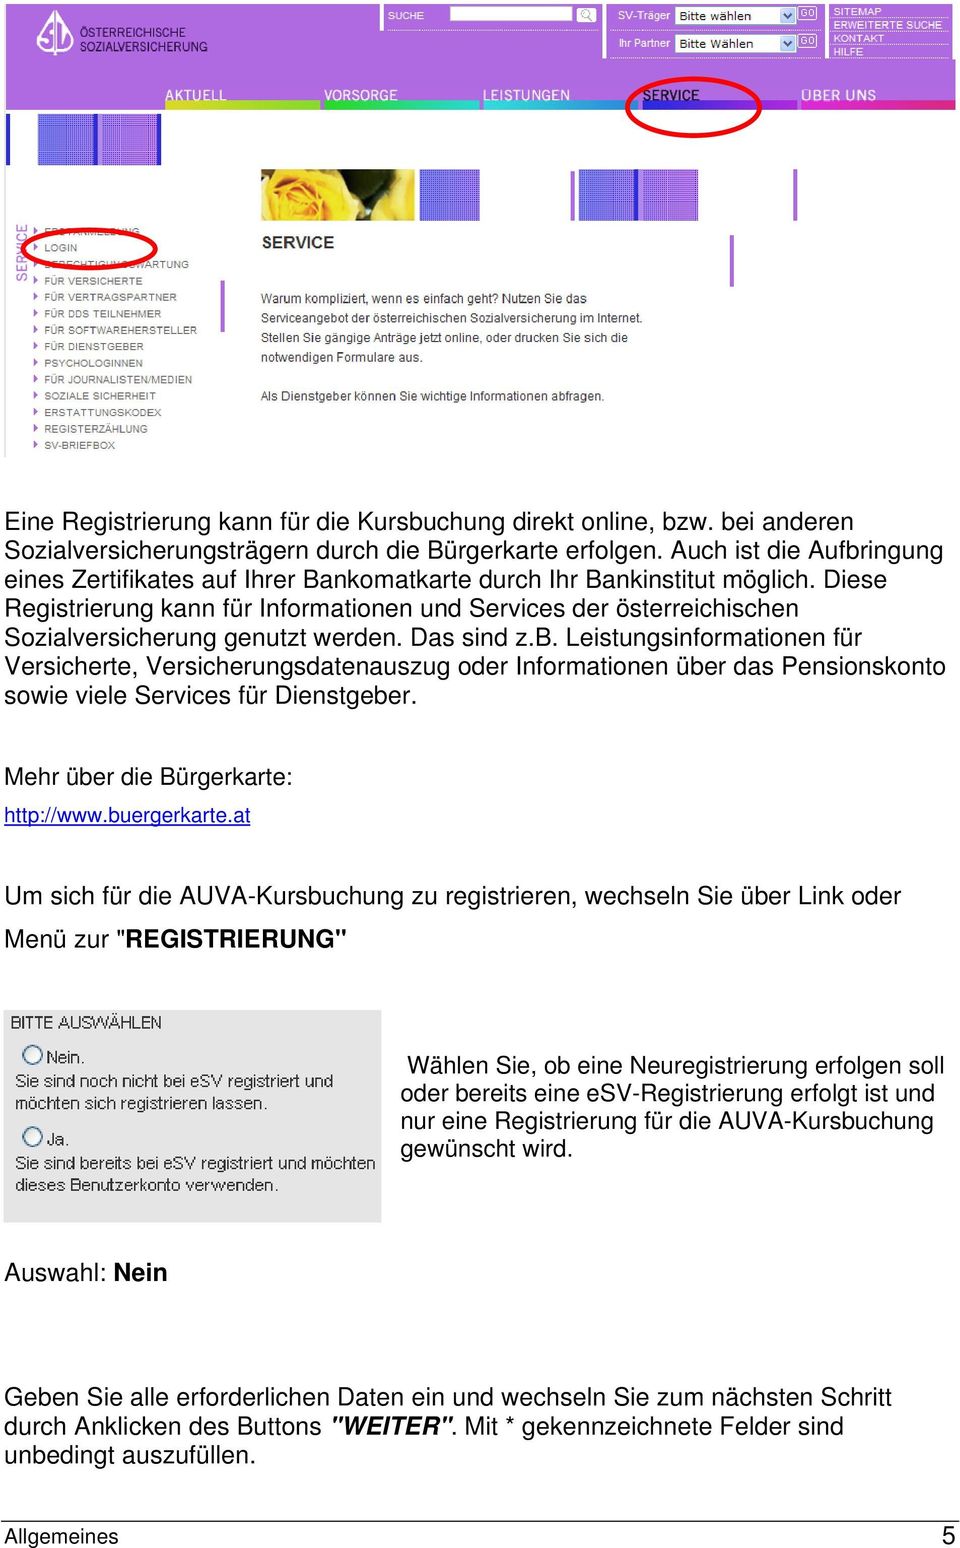 Diese Registrierung kann für Informationen und Services der österreichischen Sozialversicherung genutzt werden. Das sind z.b.